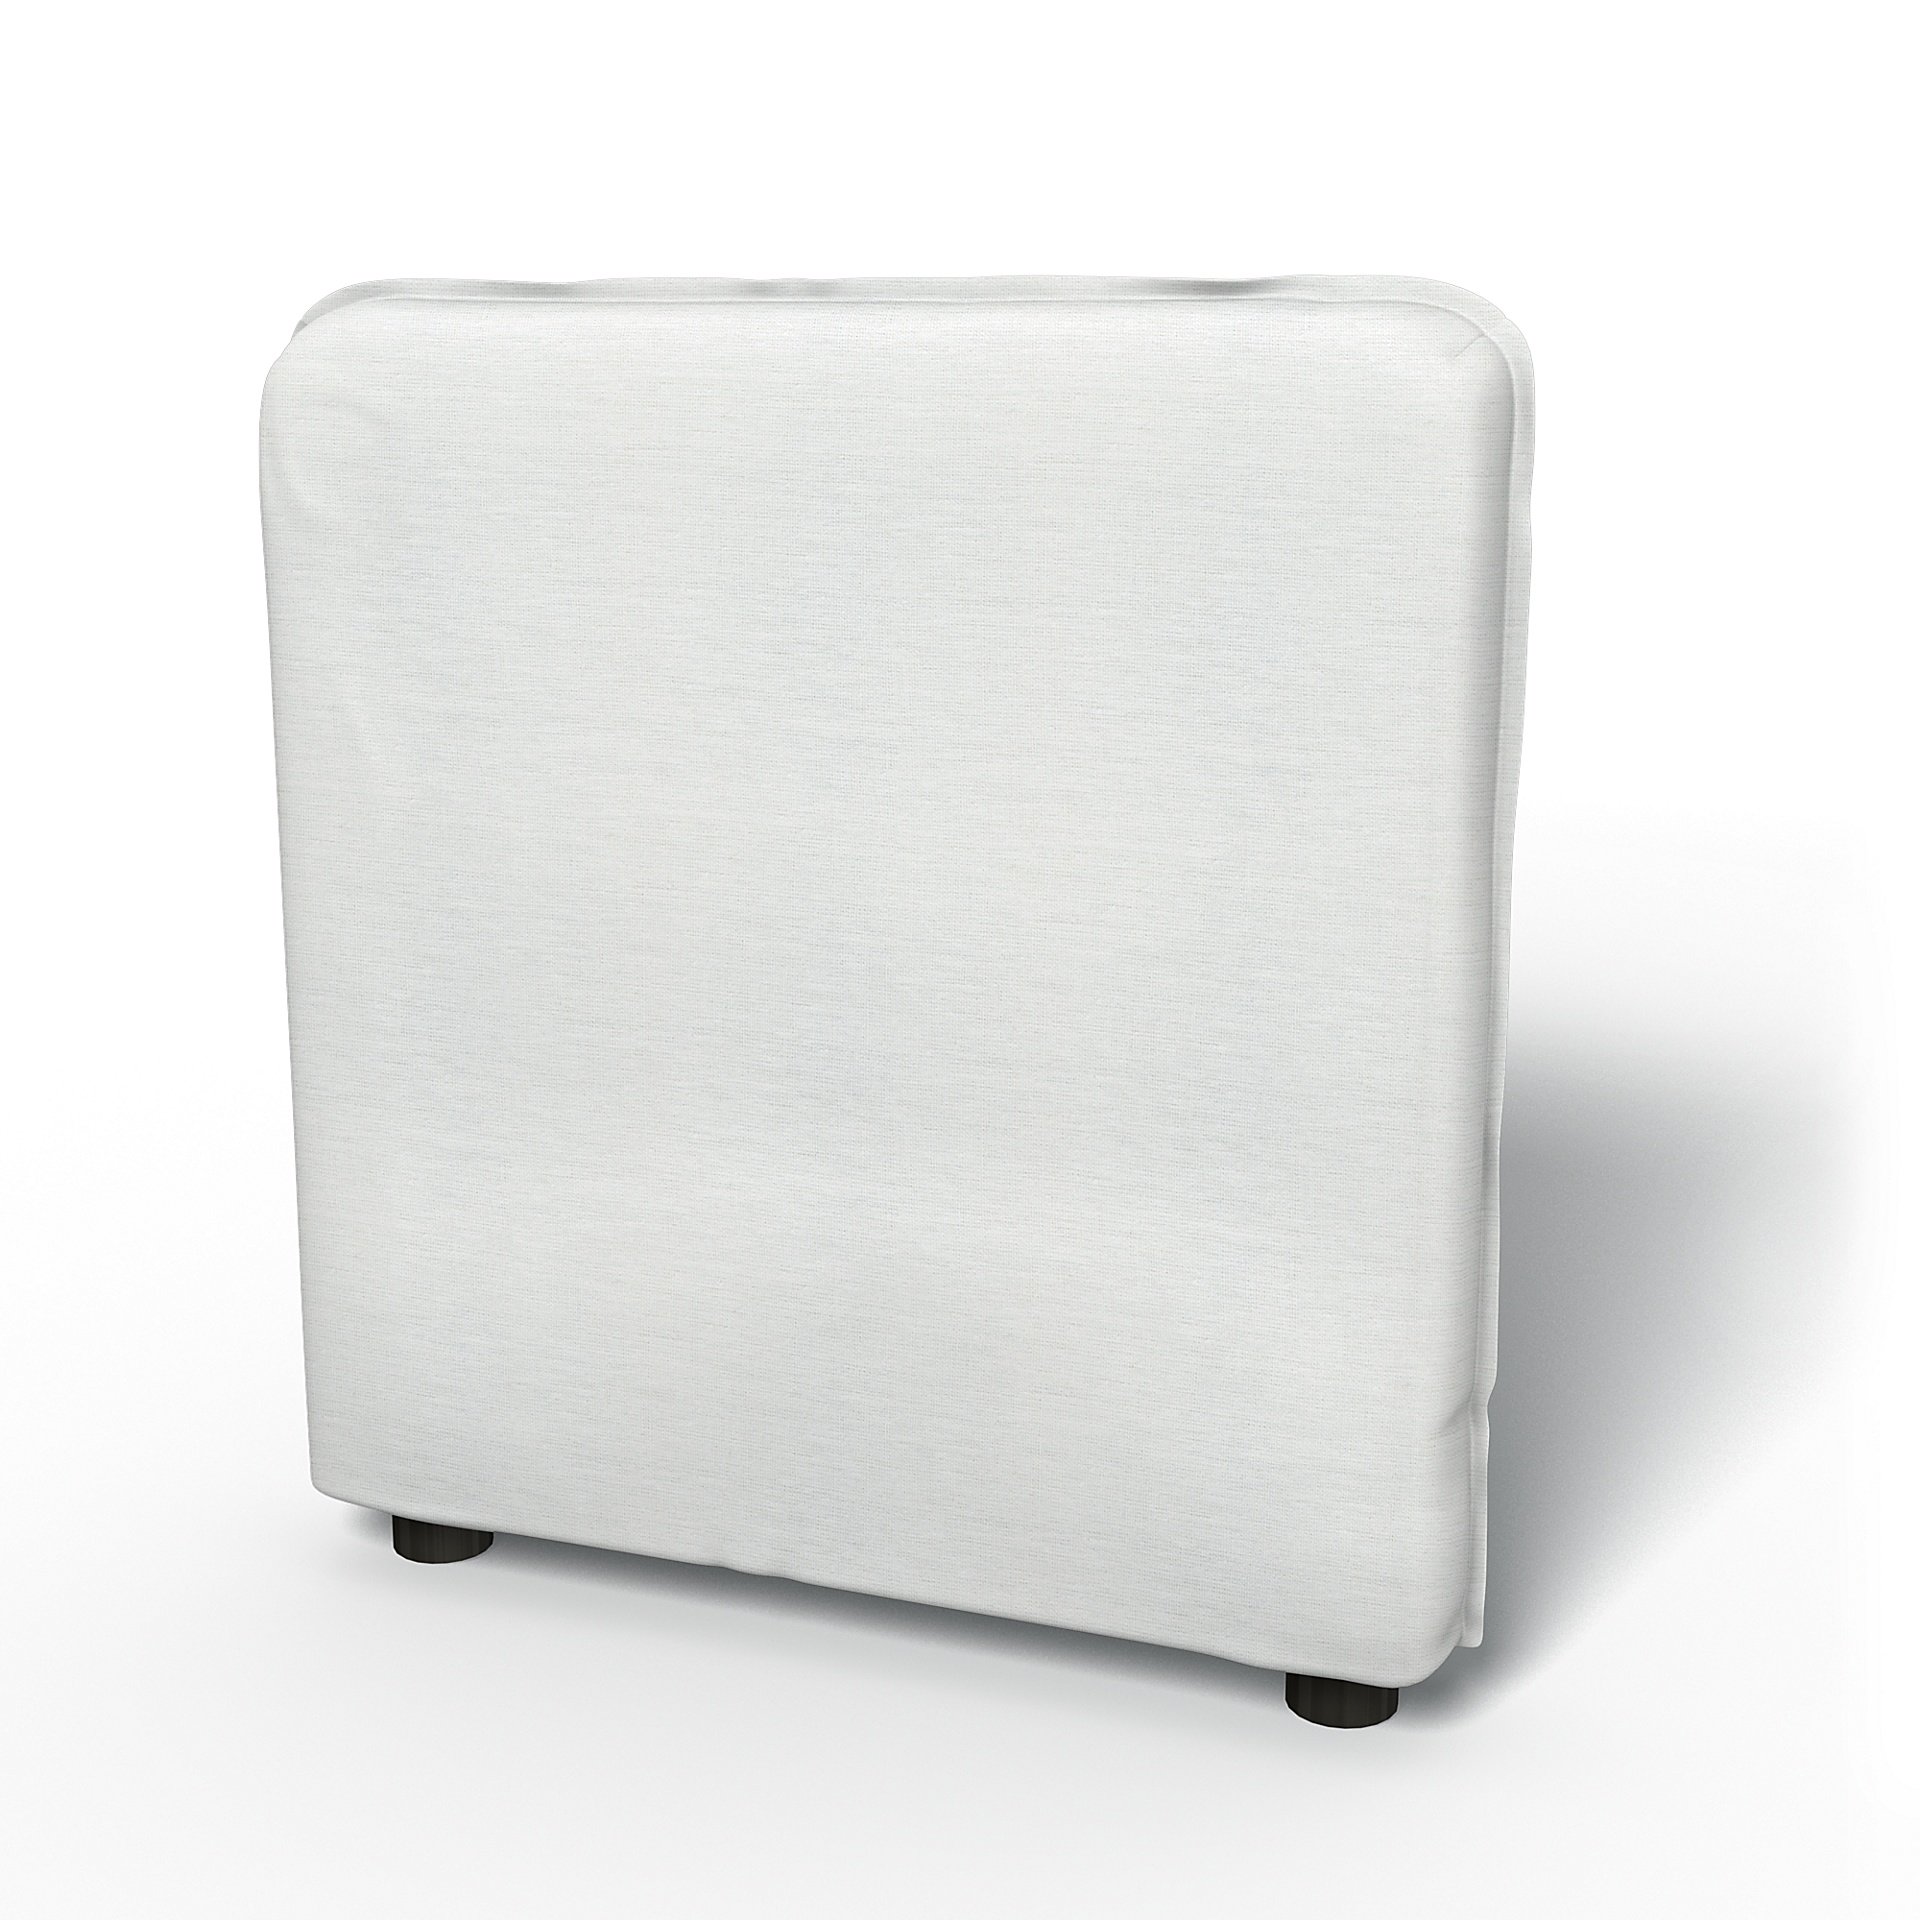 IKEA - Vallentuna Armrest Cover (80x60x13cm), White, Linen - Bemz